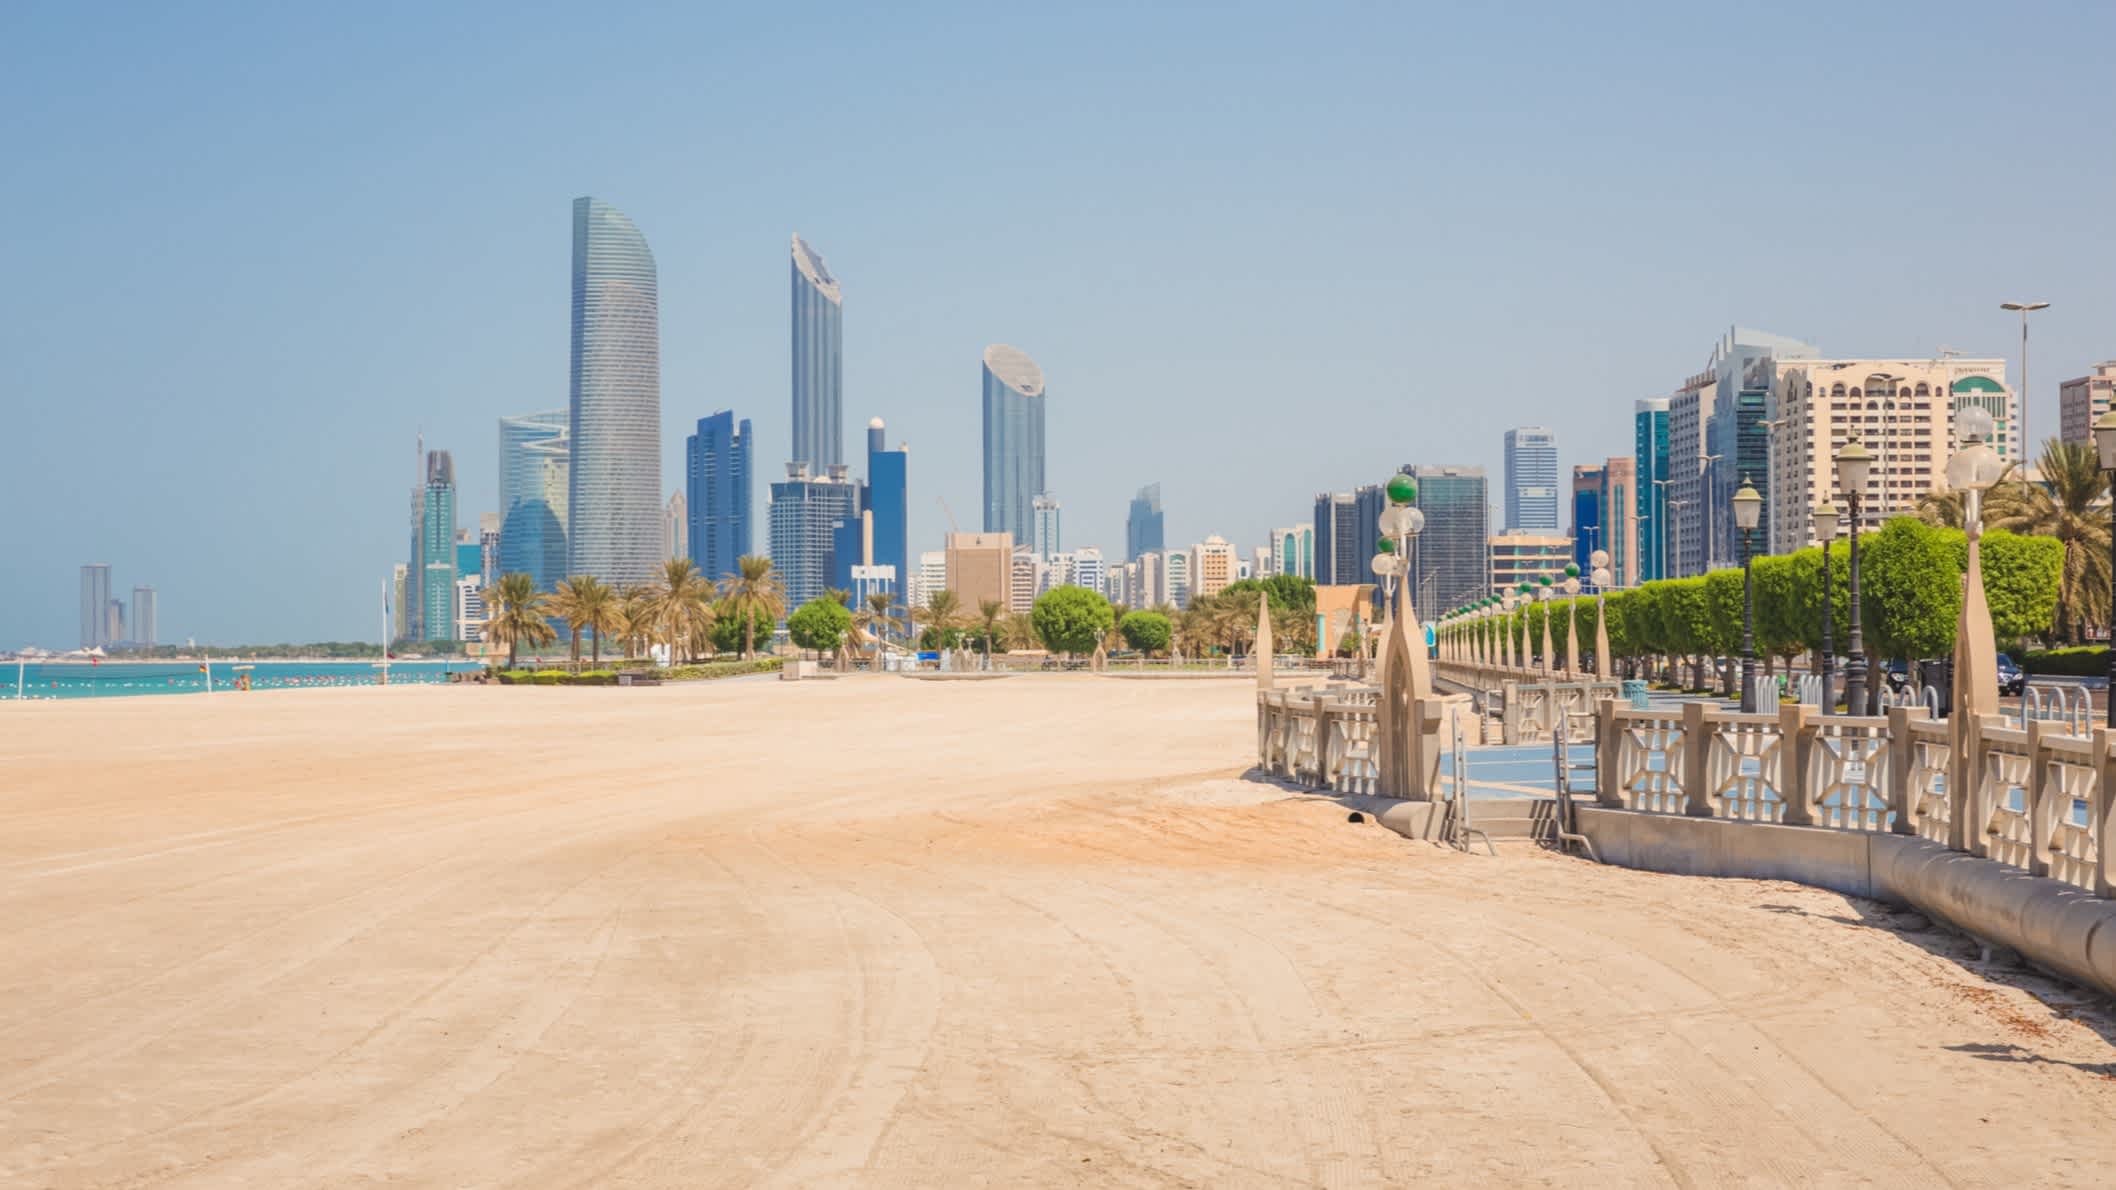 Blick auf den Corniche Beach auf sonnigen Tag, Abu Dhabi, Vereinigte Arabische Emirate.